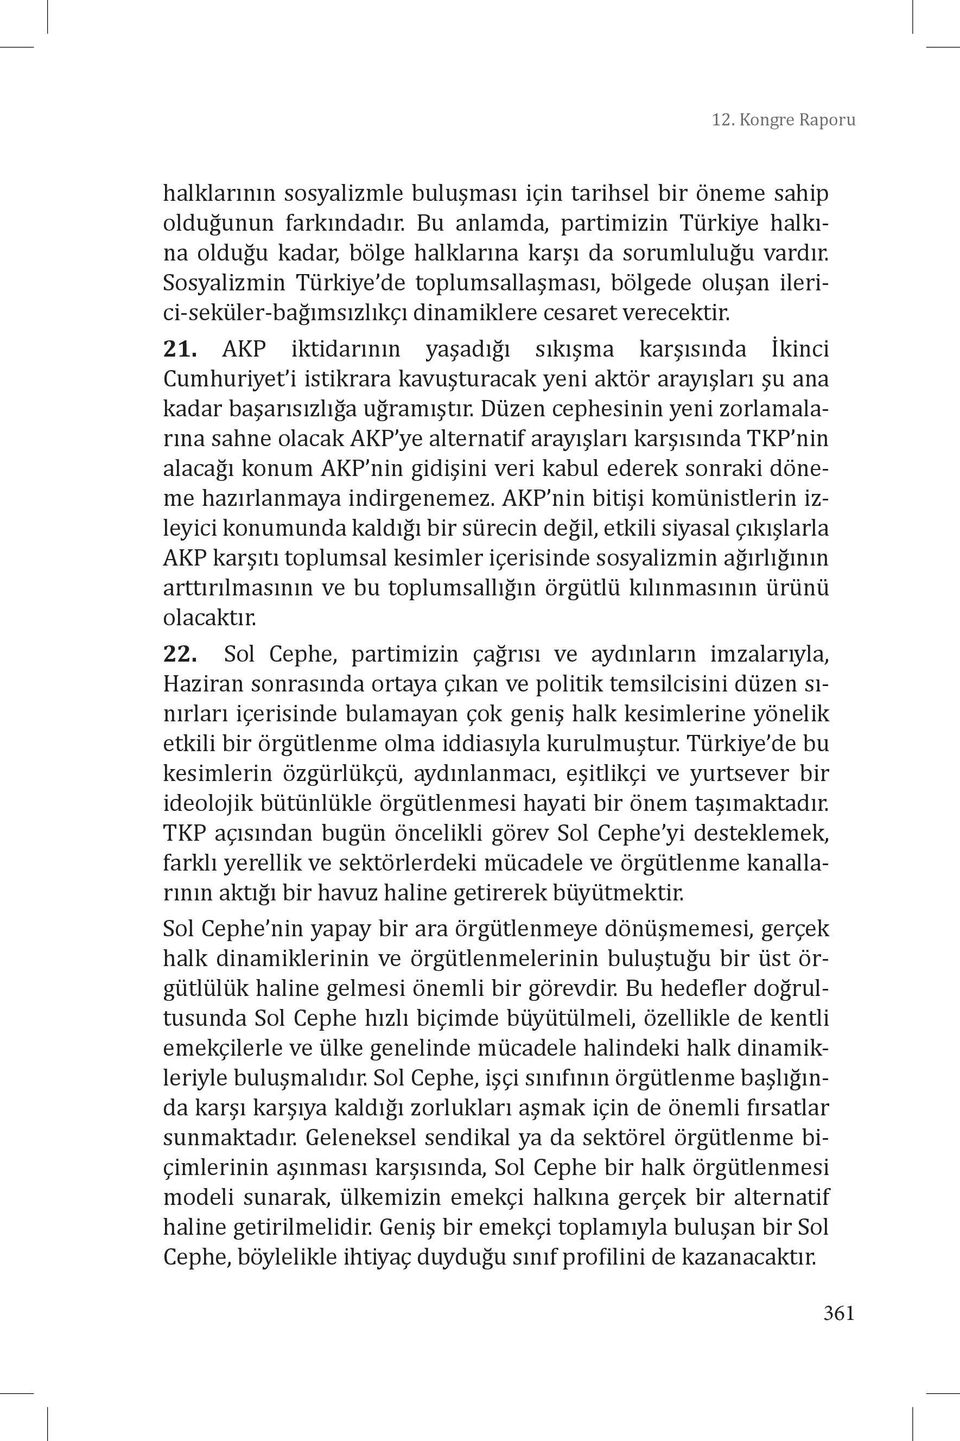 Sosyalizmin Türkiye de toplumsallaşması, bölgede oluşan ilerici-seküler-bağımsızlıkçı dinamiklere cesaret verecektir. 21.